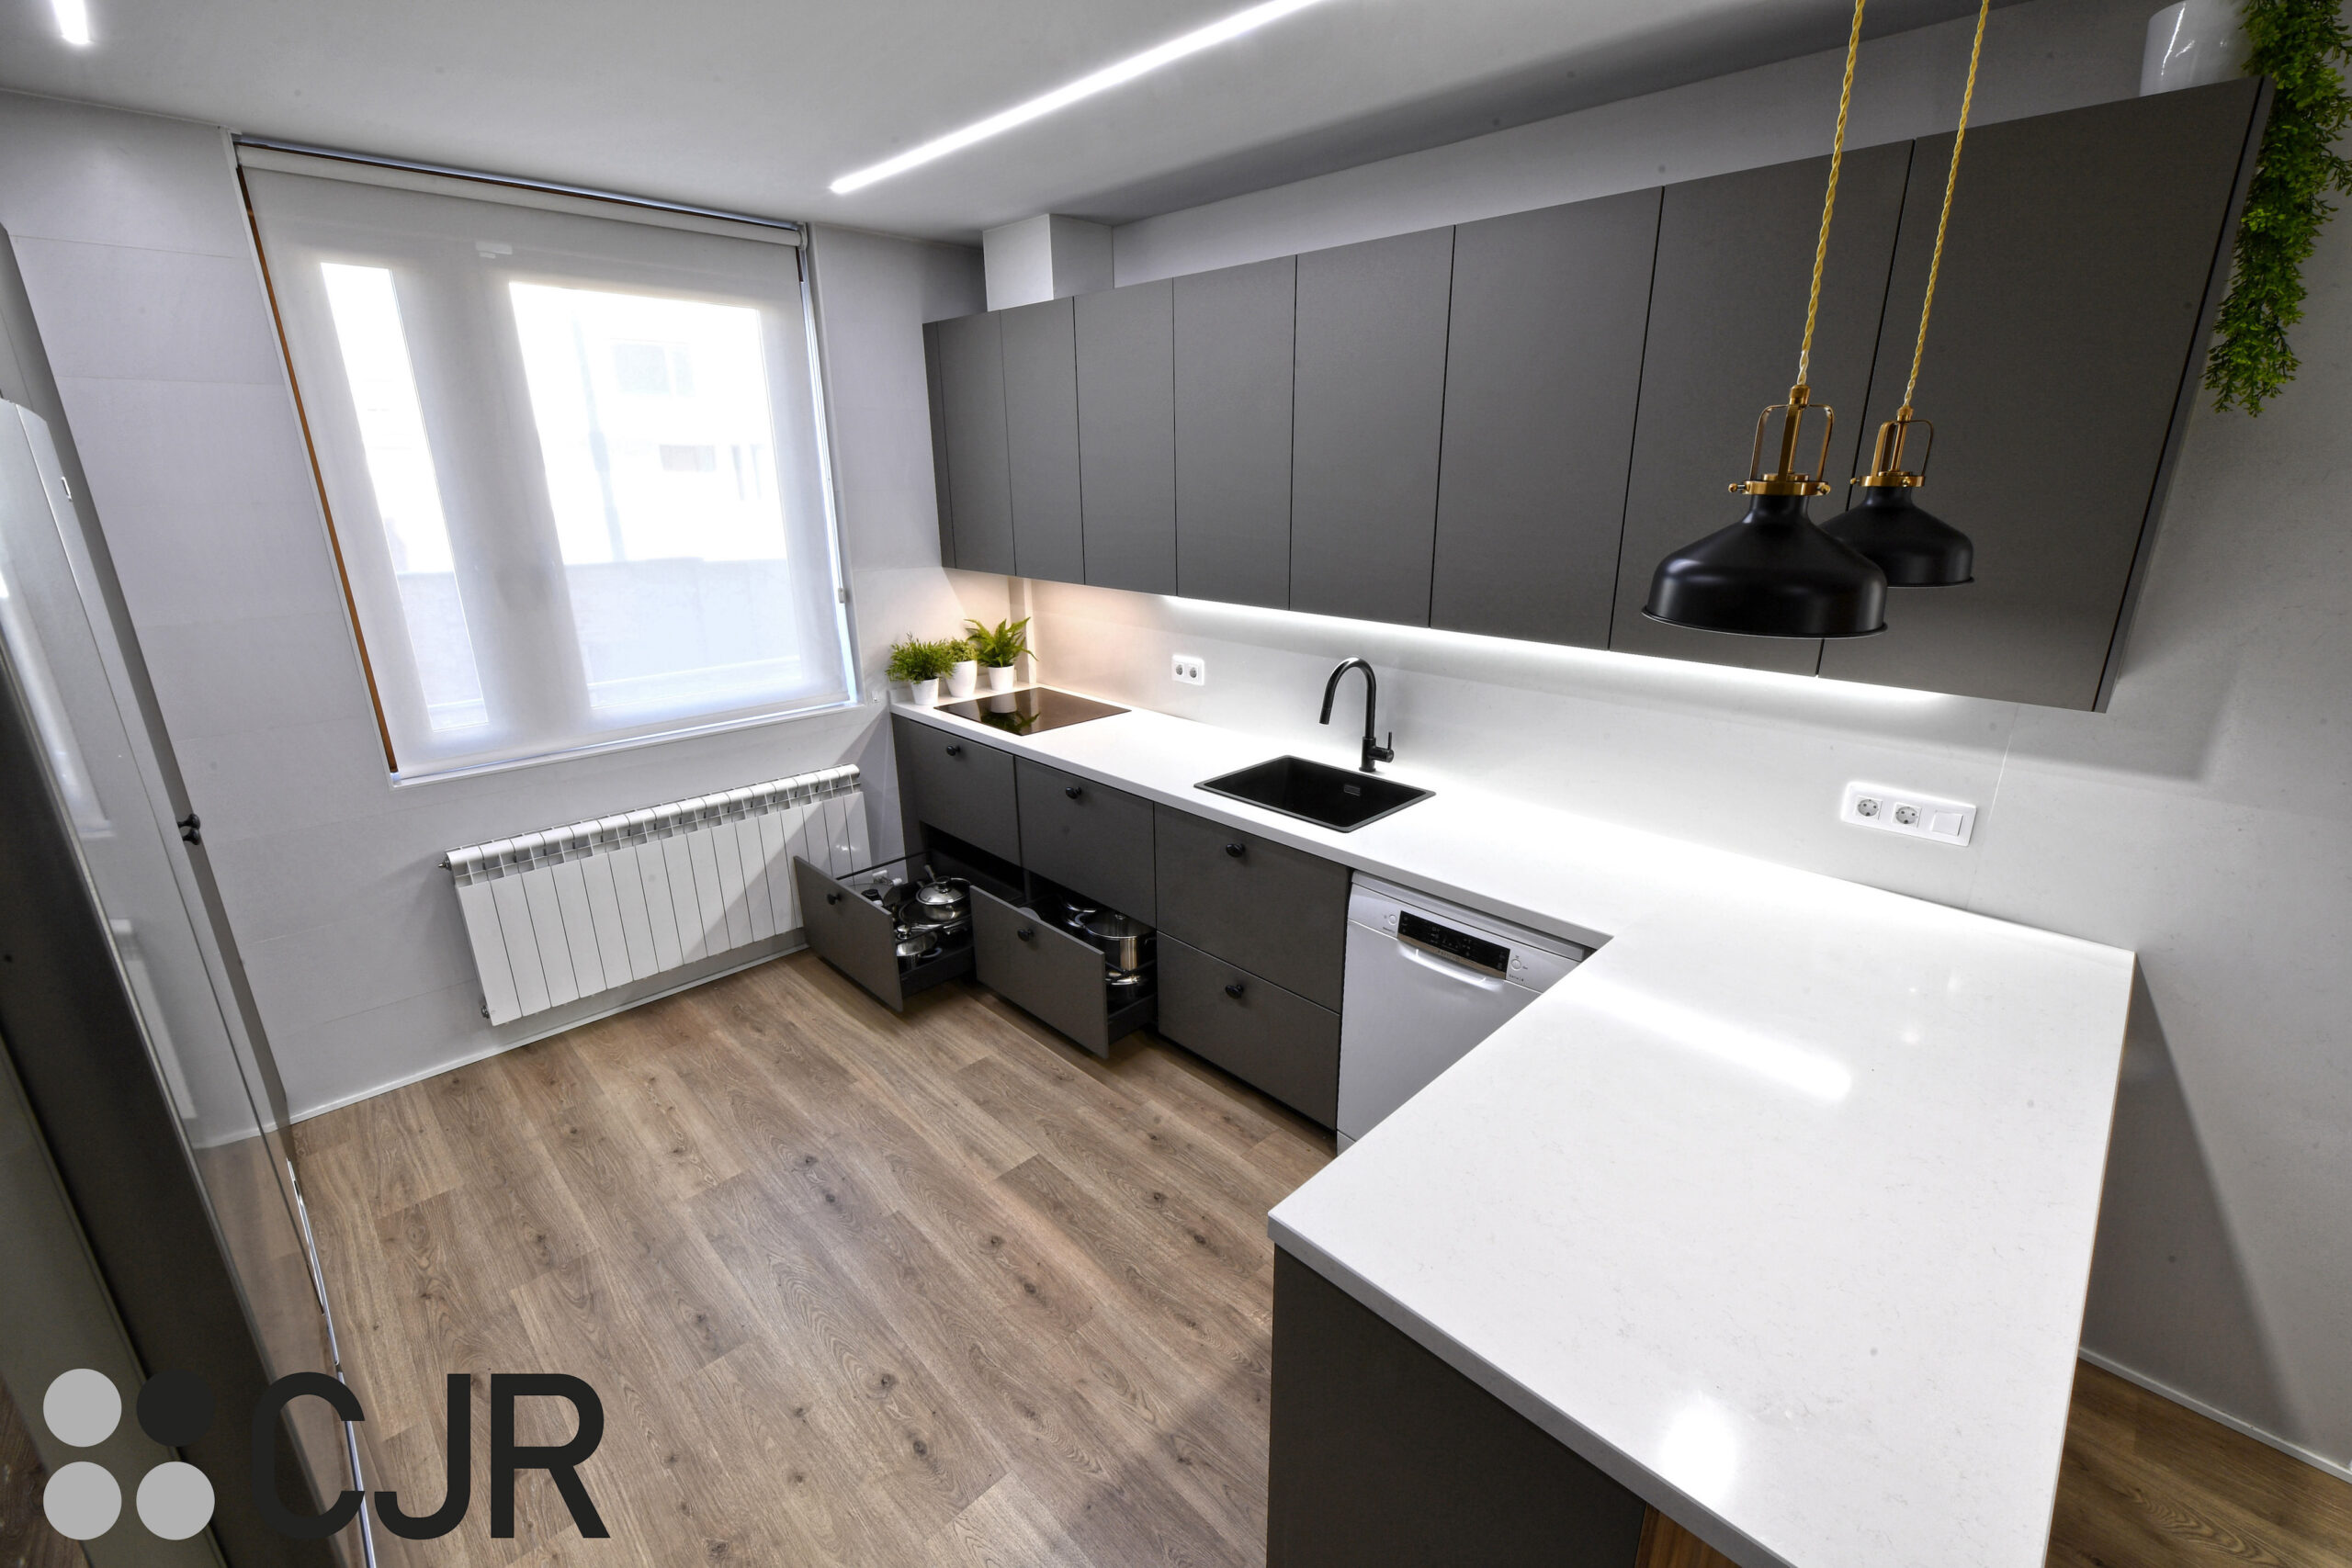 muebles bajos de cocina gris y madera moderna con vitrinas ilumminadas cocinas cjr